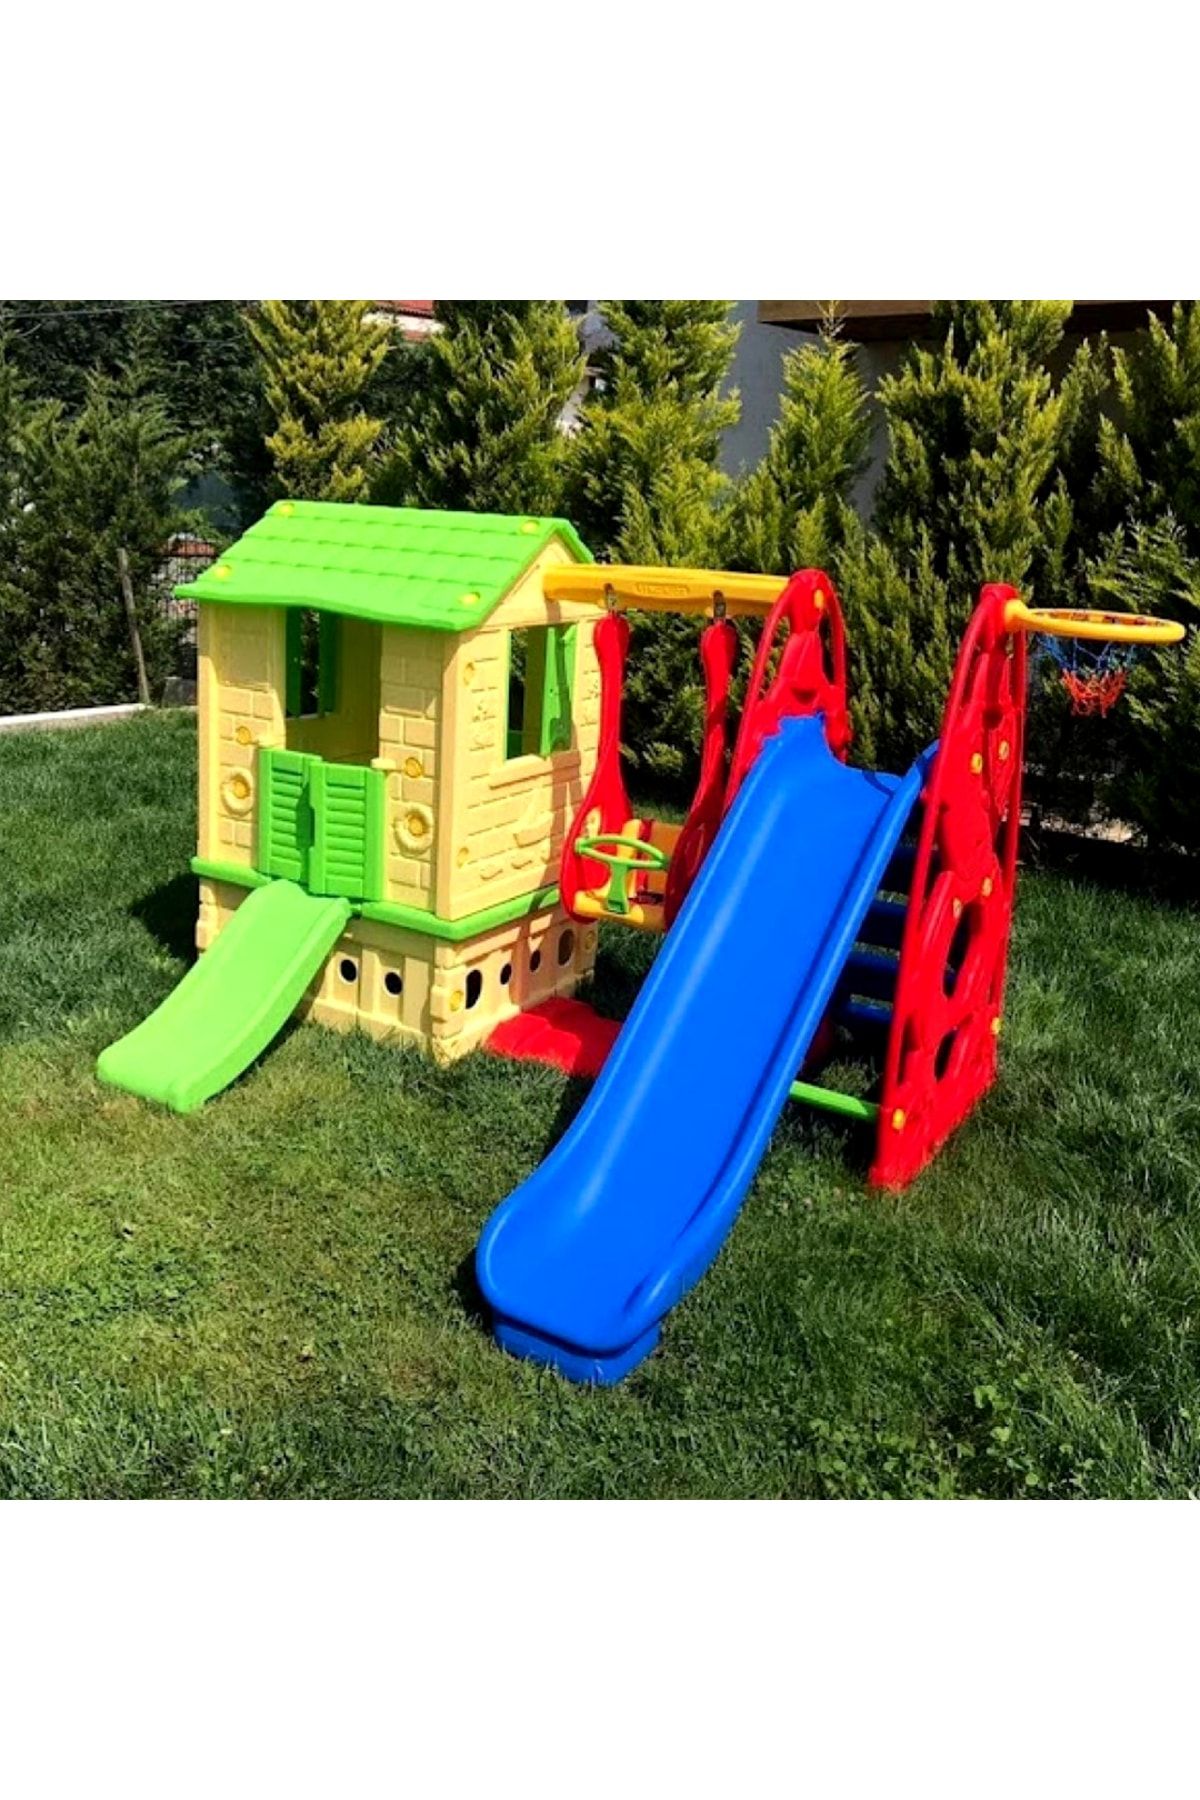 ÇIRAK Deluxe Büyük Set - Çocuk Oyun Parkı - Kaydırak - Salıncak - Oyun Evi - Çocuk Parkı Tam Set - Çocuk